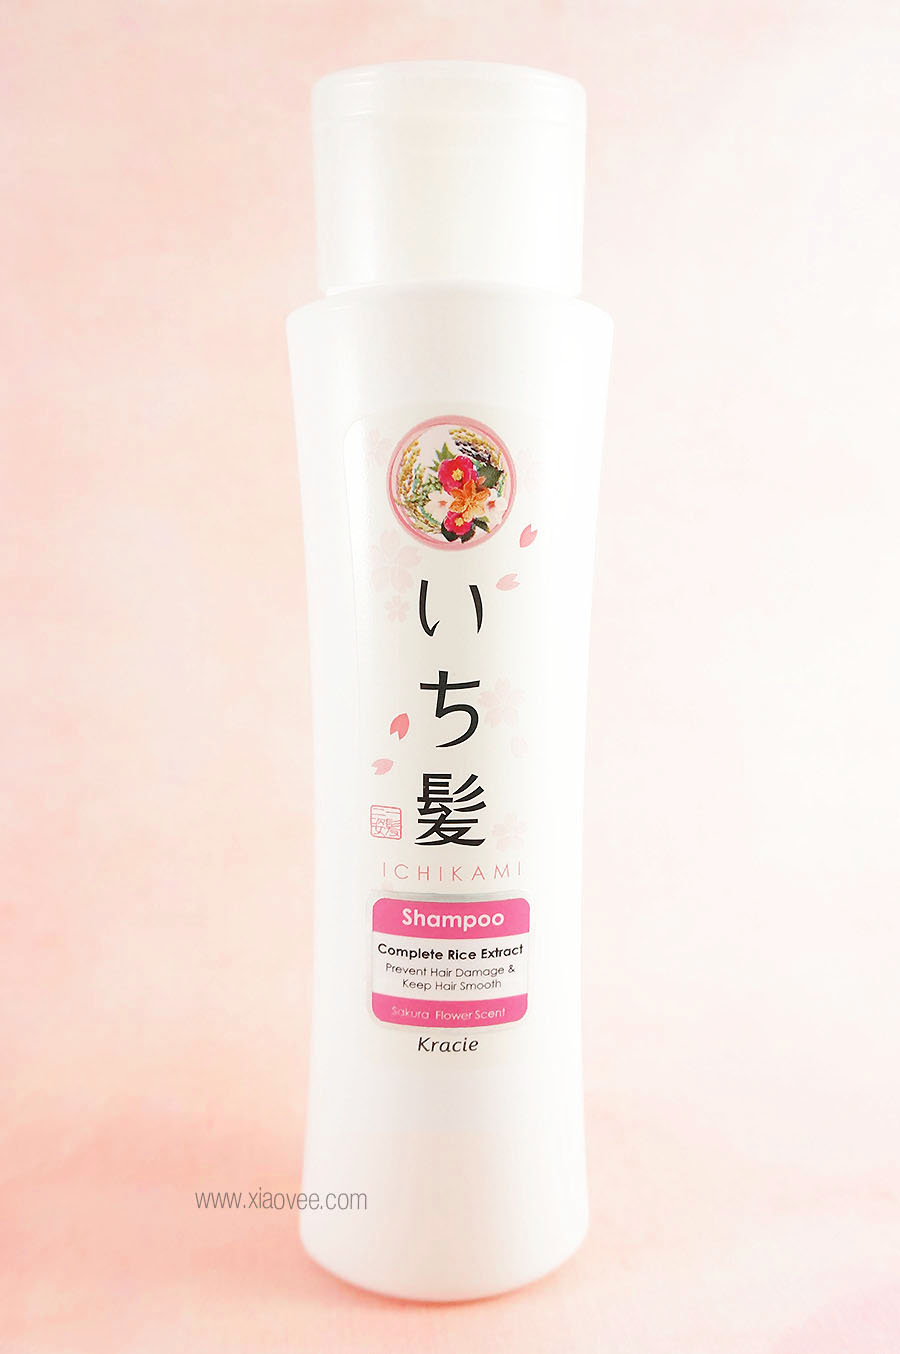 Kracie Ichikami Shampoo Review, Kracie Ichikami to repair and prevent damaged hair